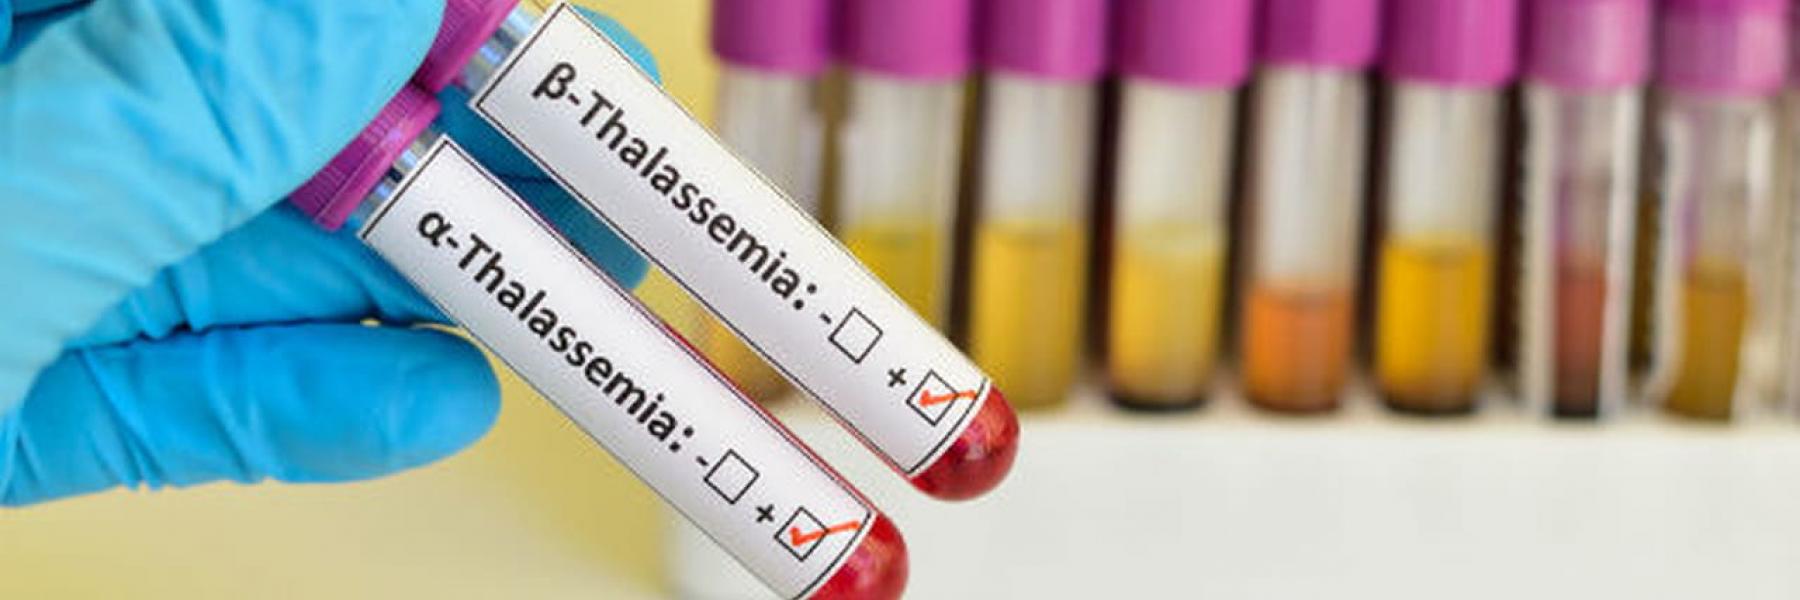 علاج وراثي جديد يحمل الأمل لملايين المصابين بالثلاسيميا